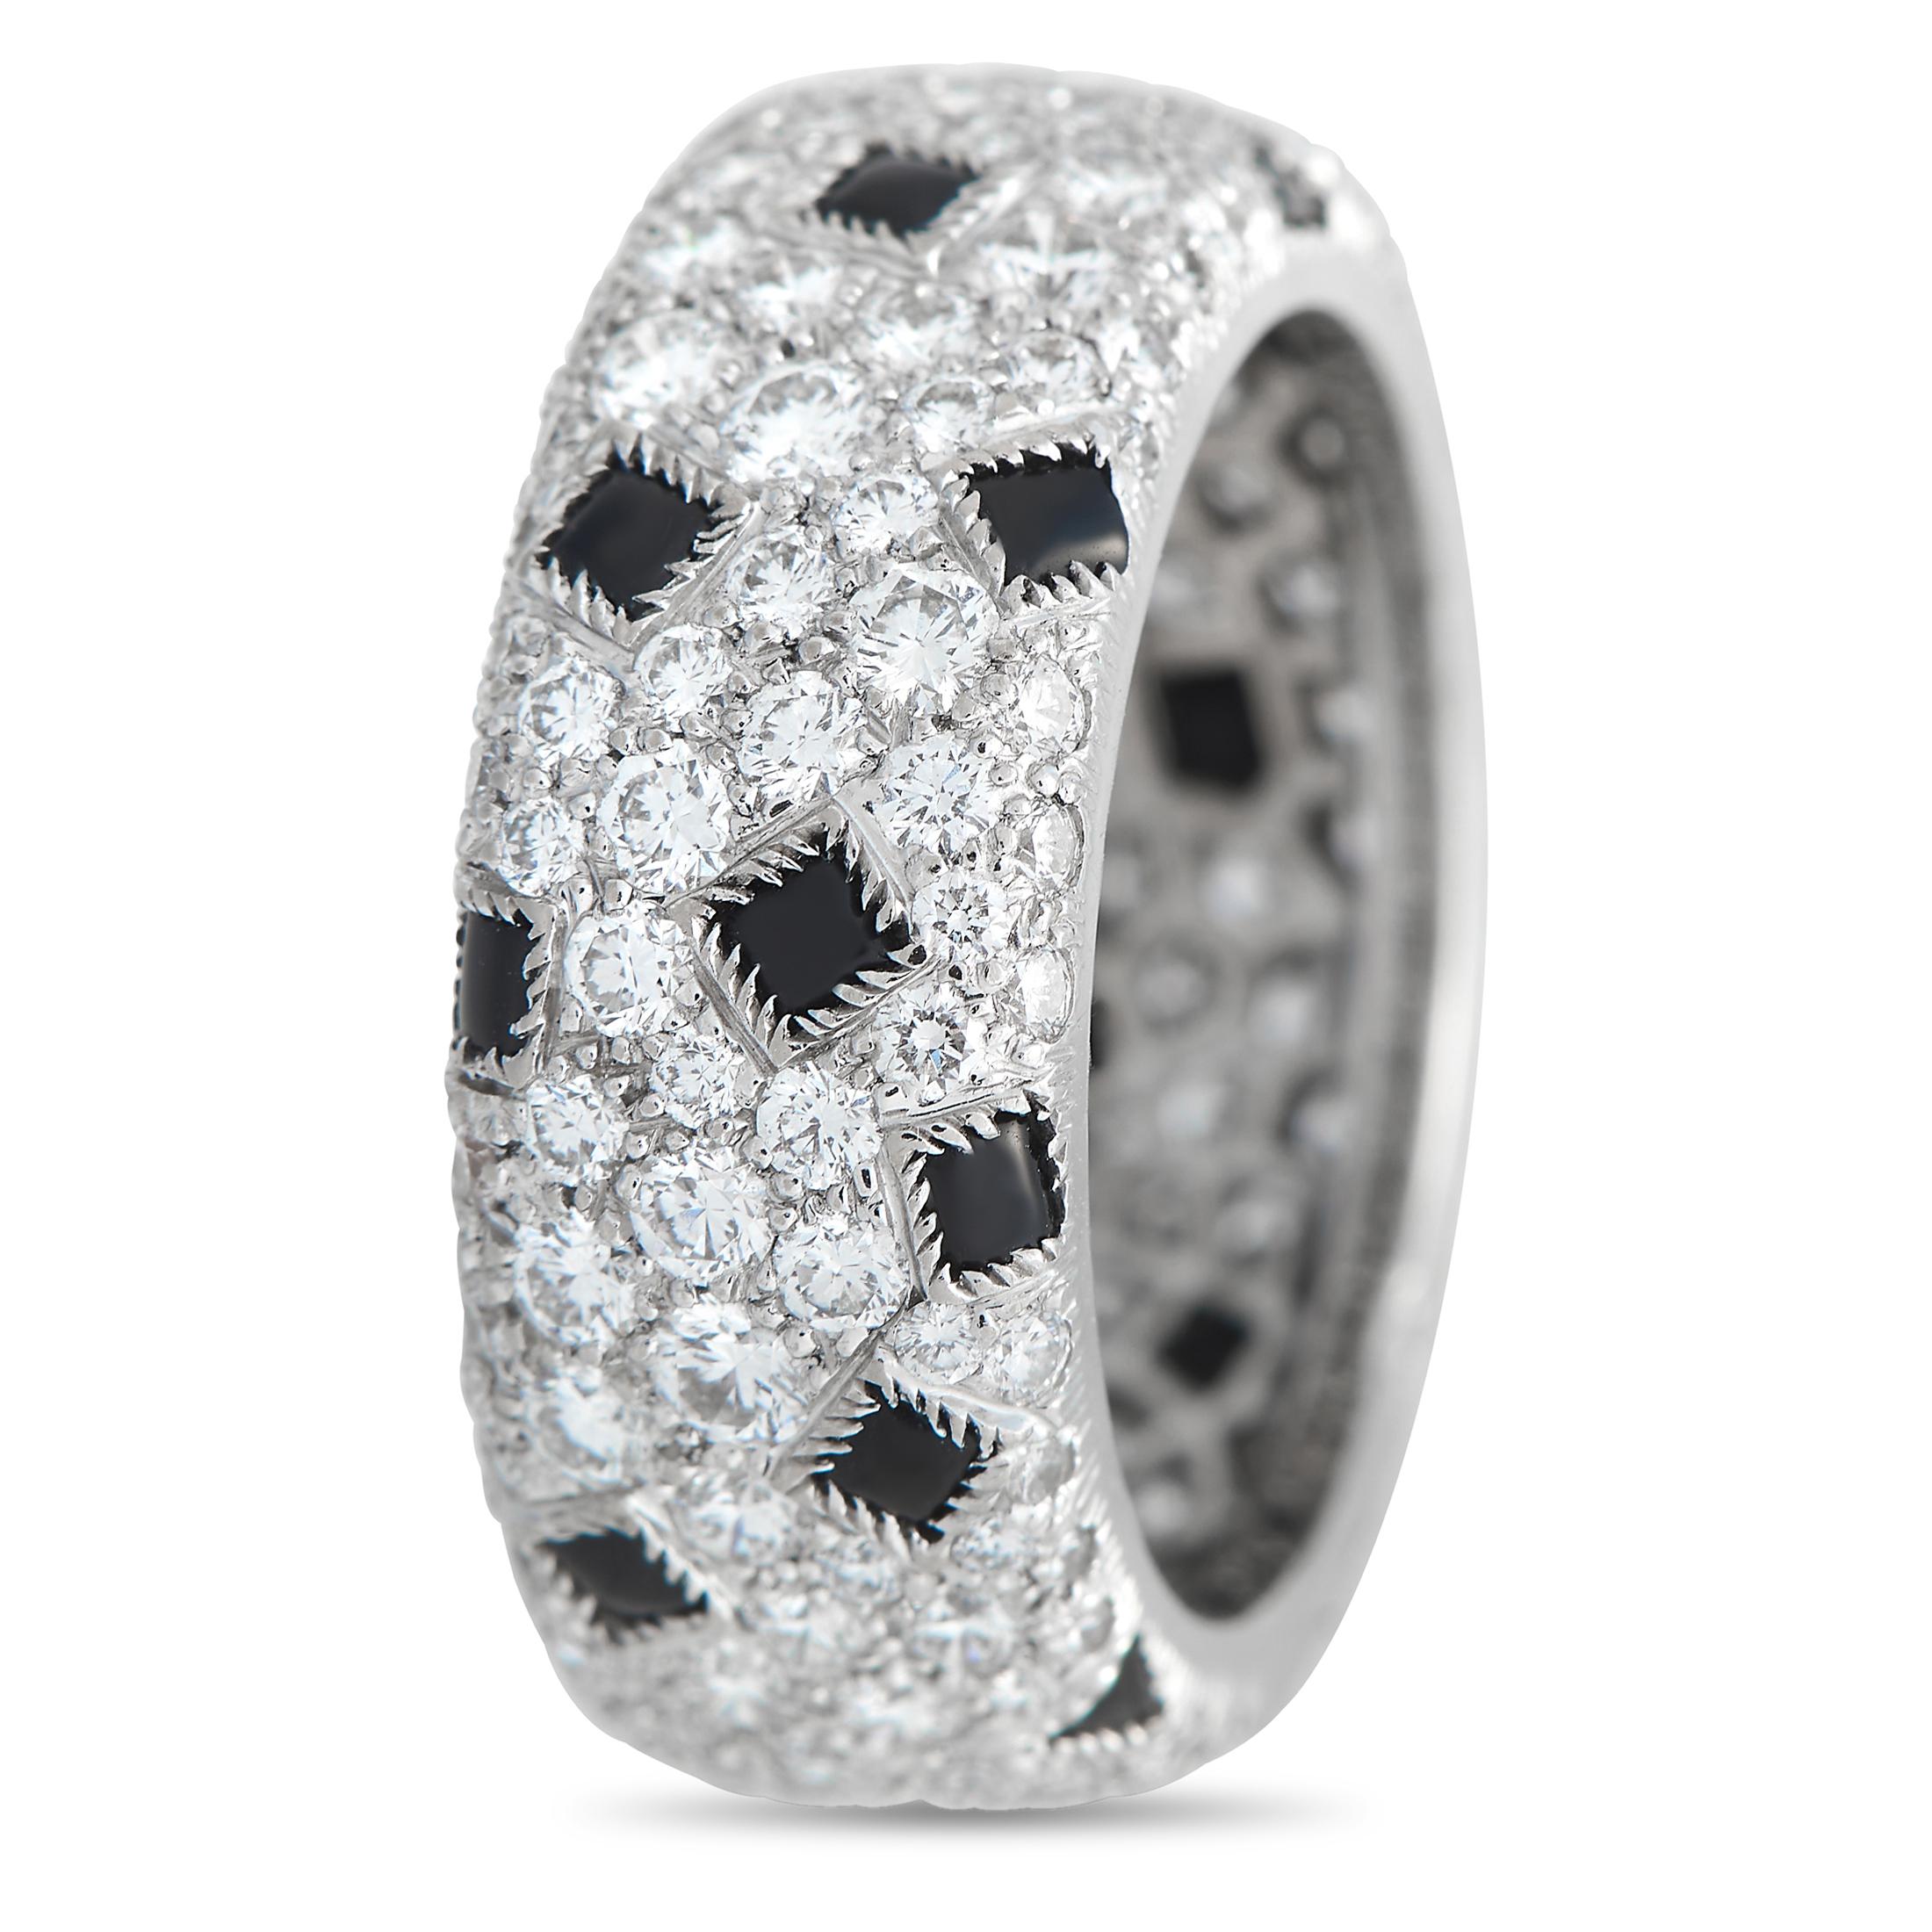 Dieser Cartier Panthere Pelage Ring ist schlicht, elegant und unaufdringlich. Atemberaubende Onyx-Quadrate sind wunderschön mit funkelnden eingefügten Diamanten von insgesamt 3,45 Karat auf der Oberseite des 18 Karat Weißgoldbandes, das 9 mm breit